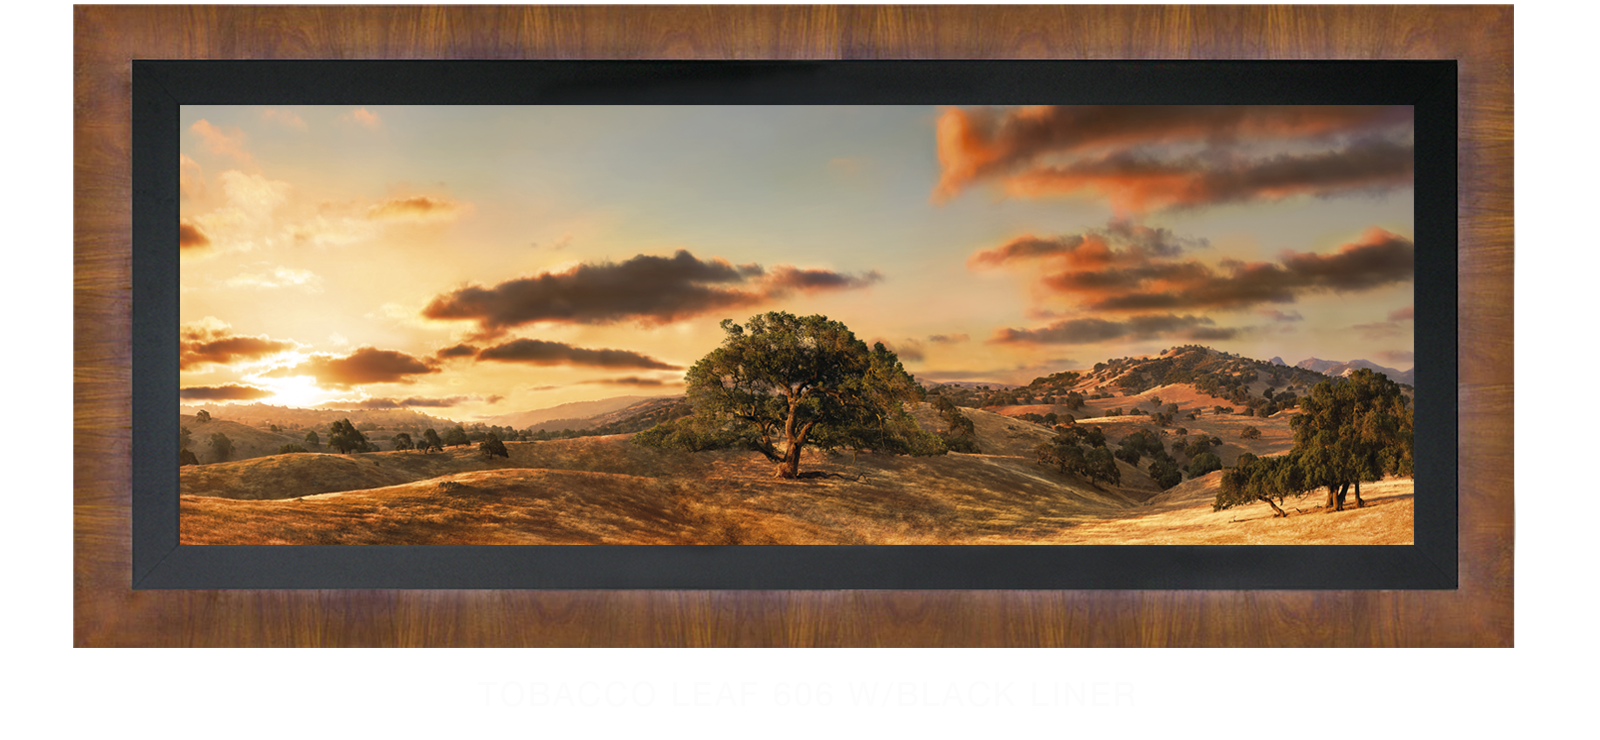 23OAKS Tobacco Leaf 606 w_Blk Liner T